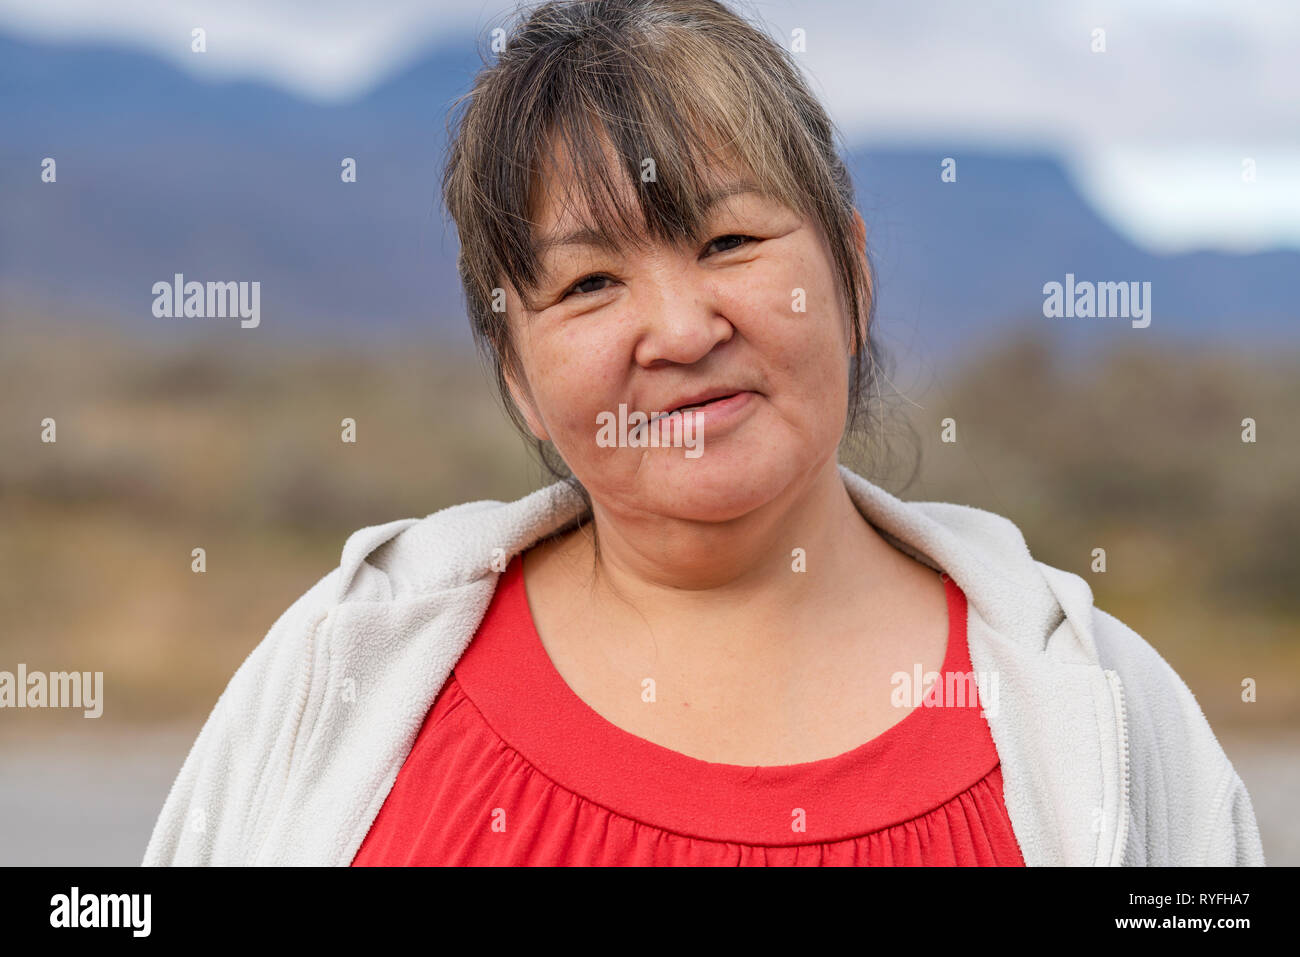 Female portrait, Narsasuaq, South Greenland Stock Photo